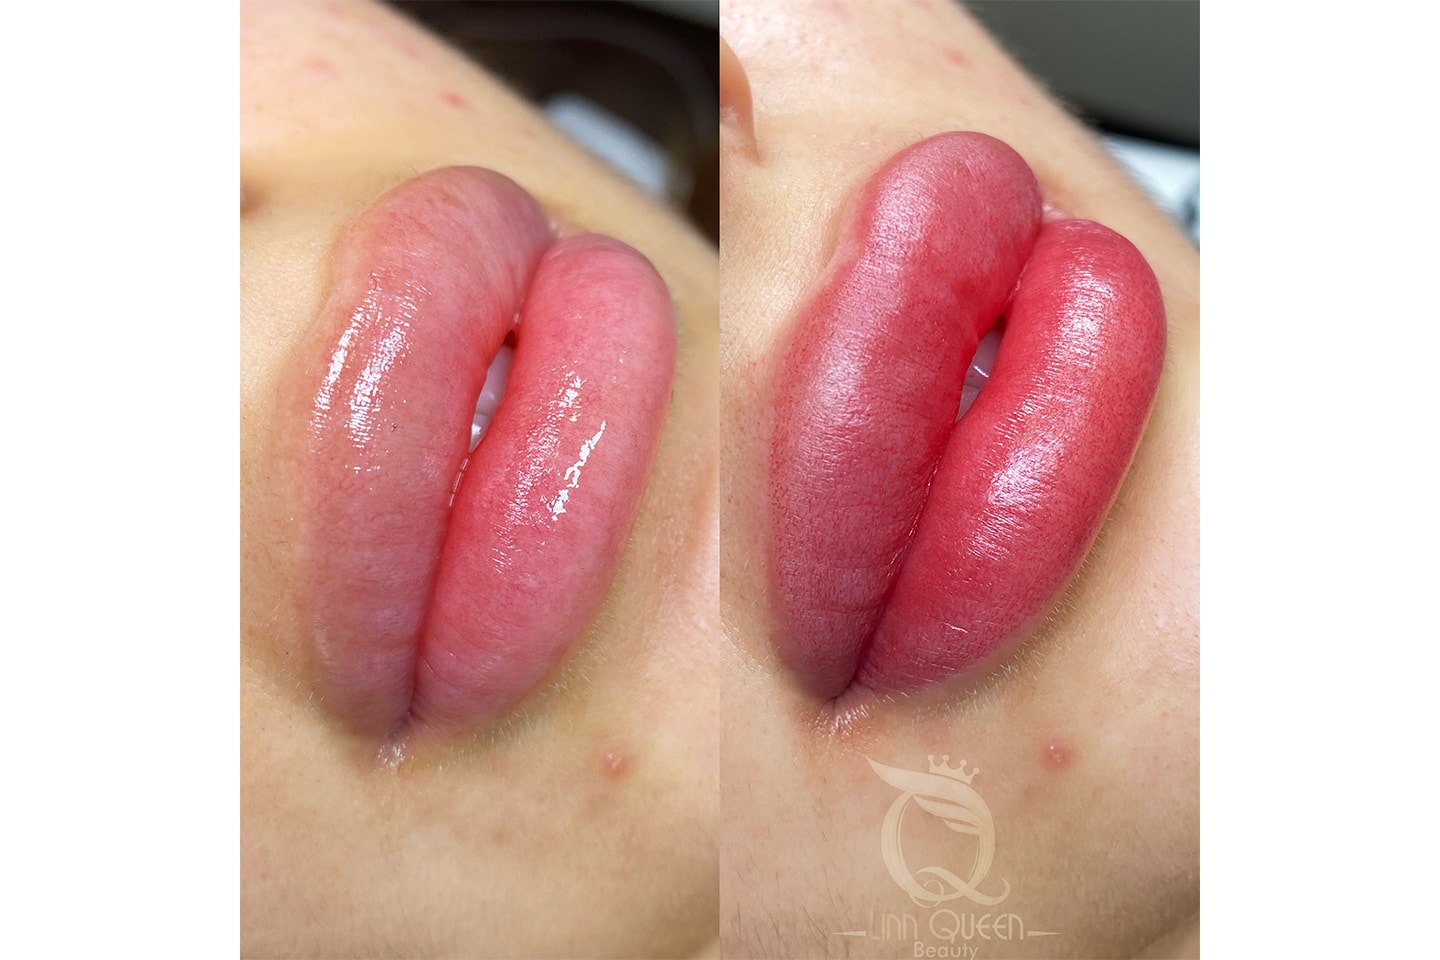 Nano lips läppigmentering hos Linn Queen Beauty (1 av 2)